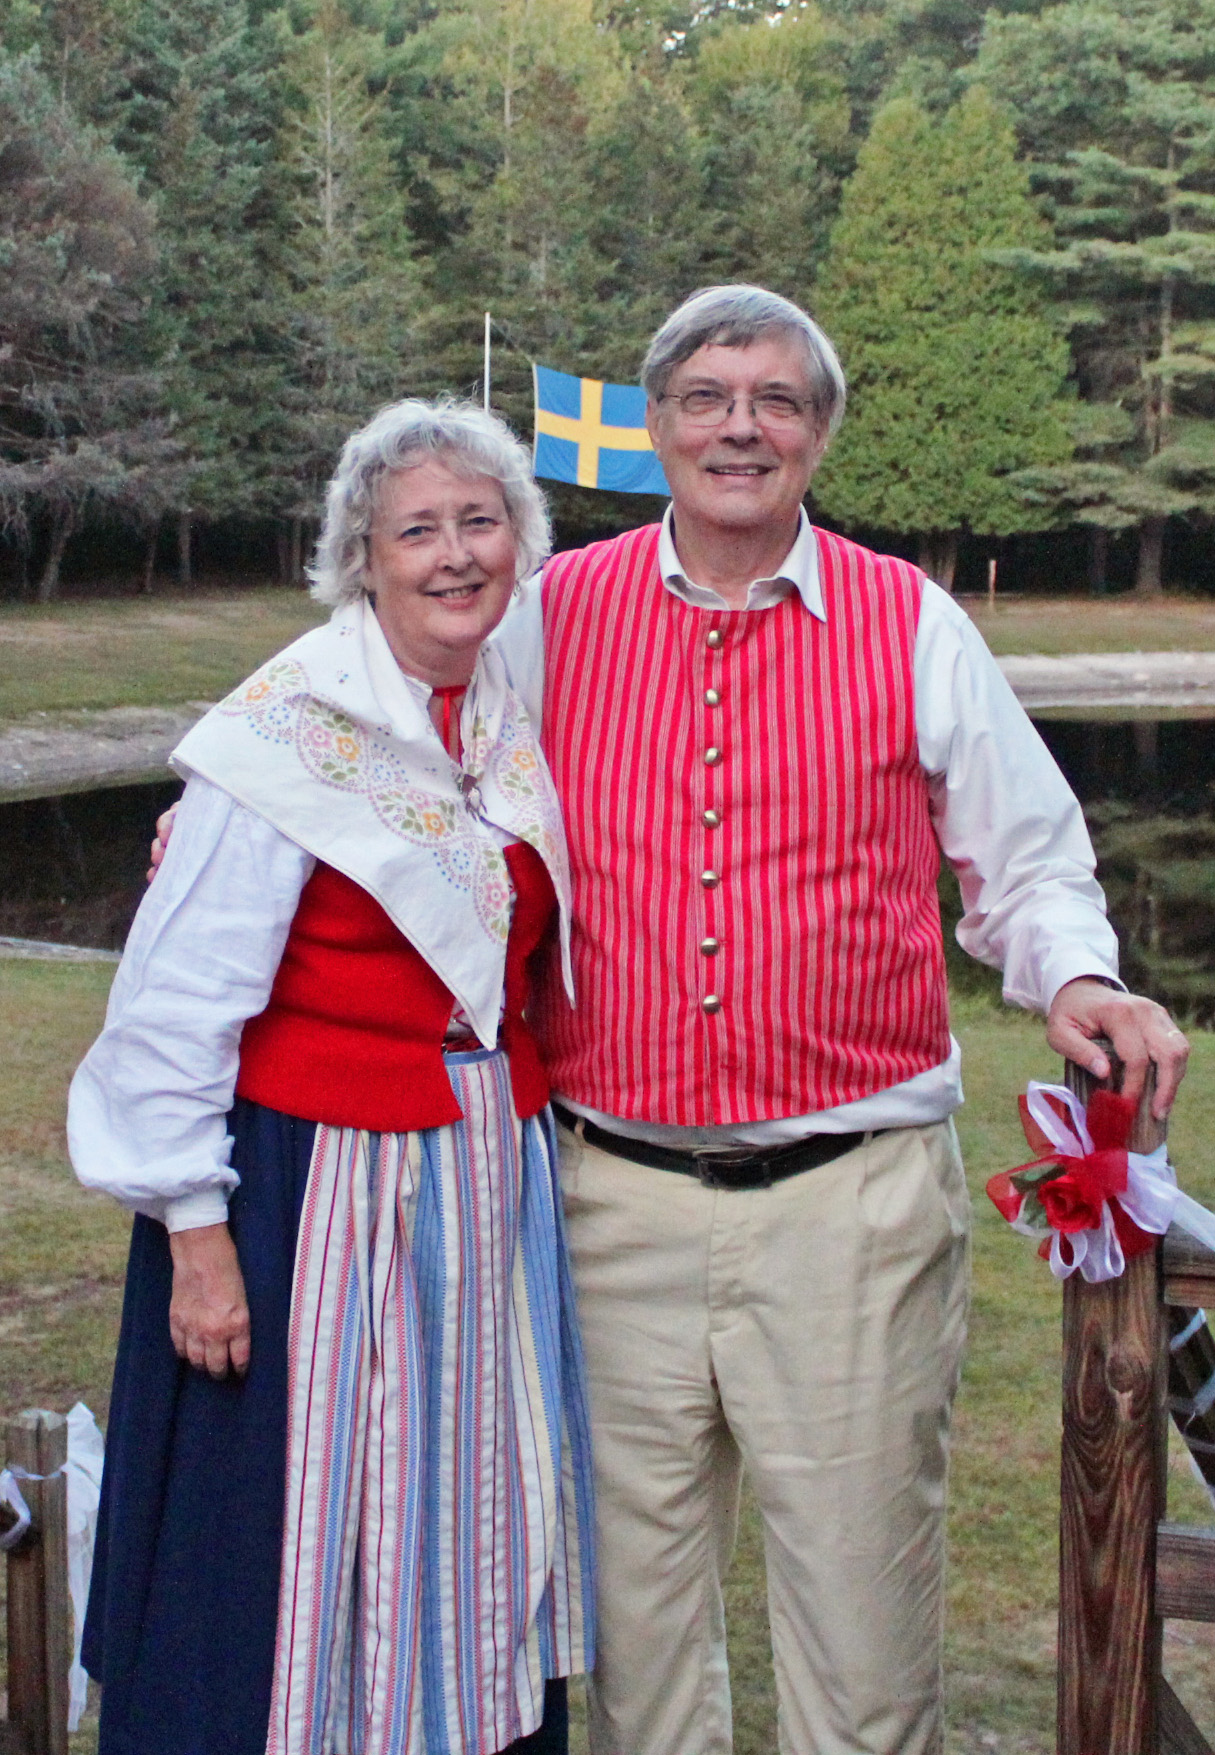 Ellen and Ken Svengalis in folk costume